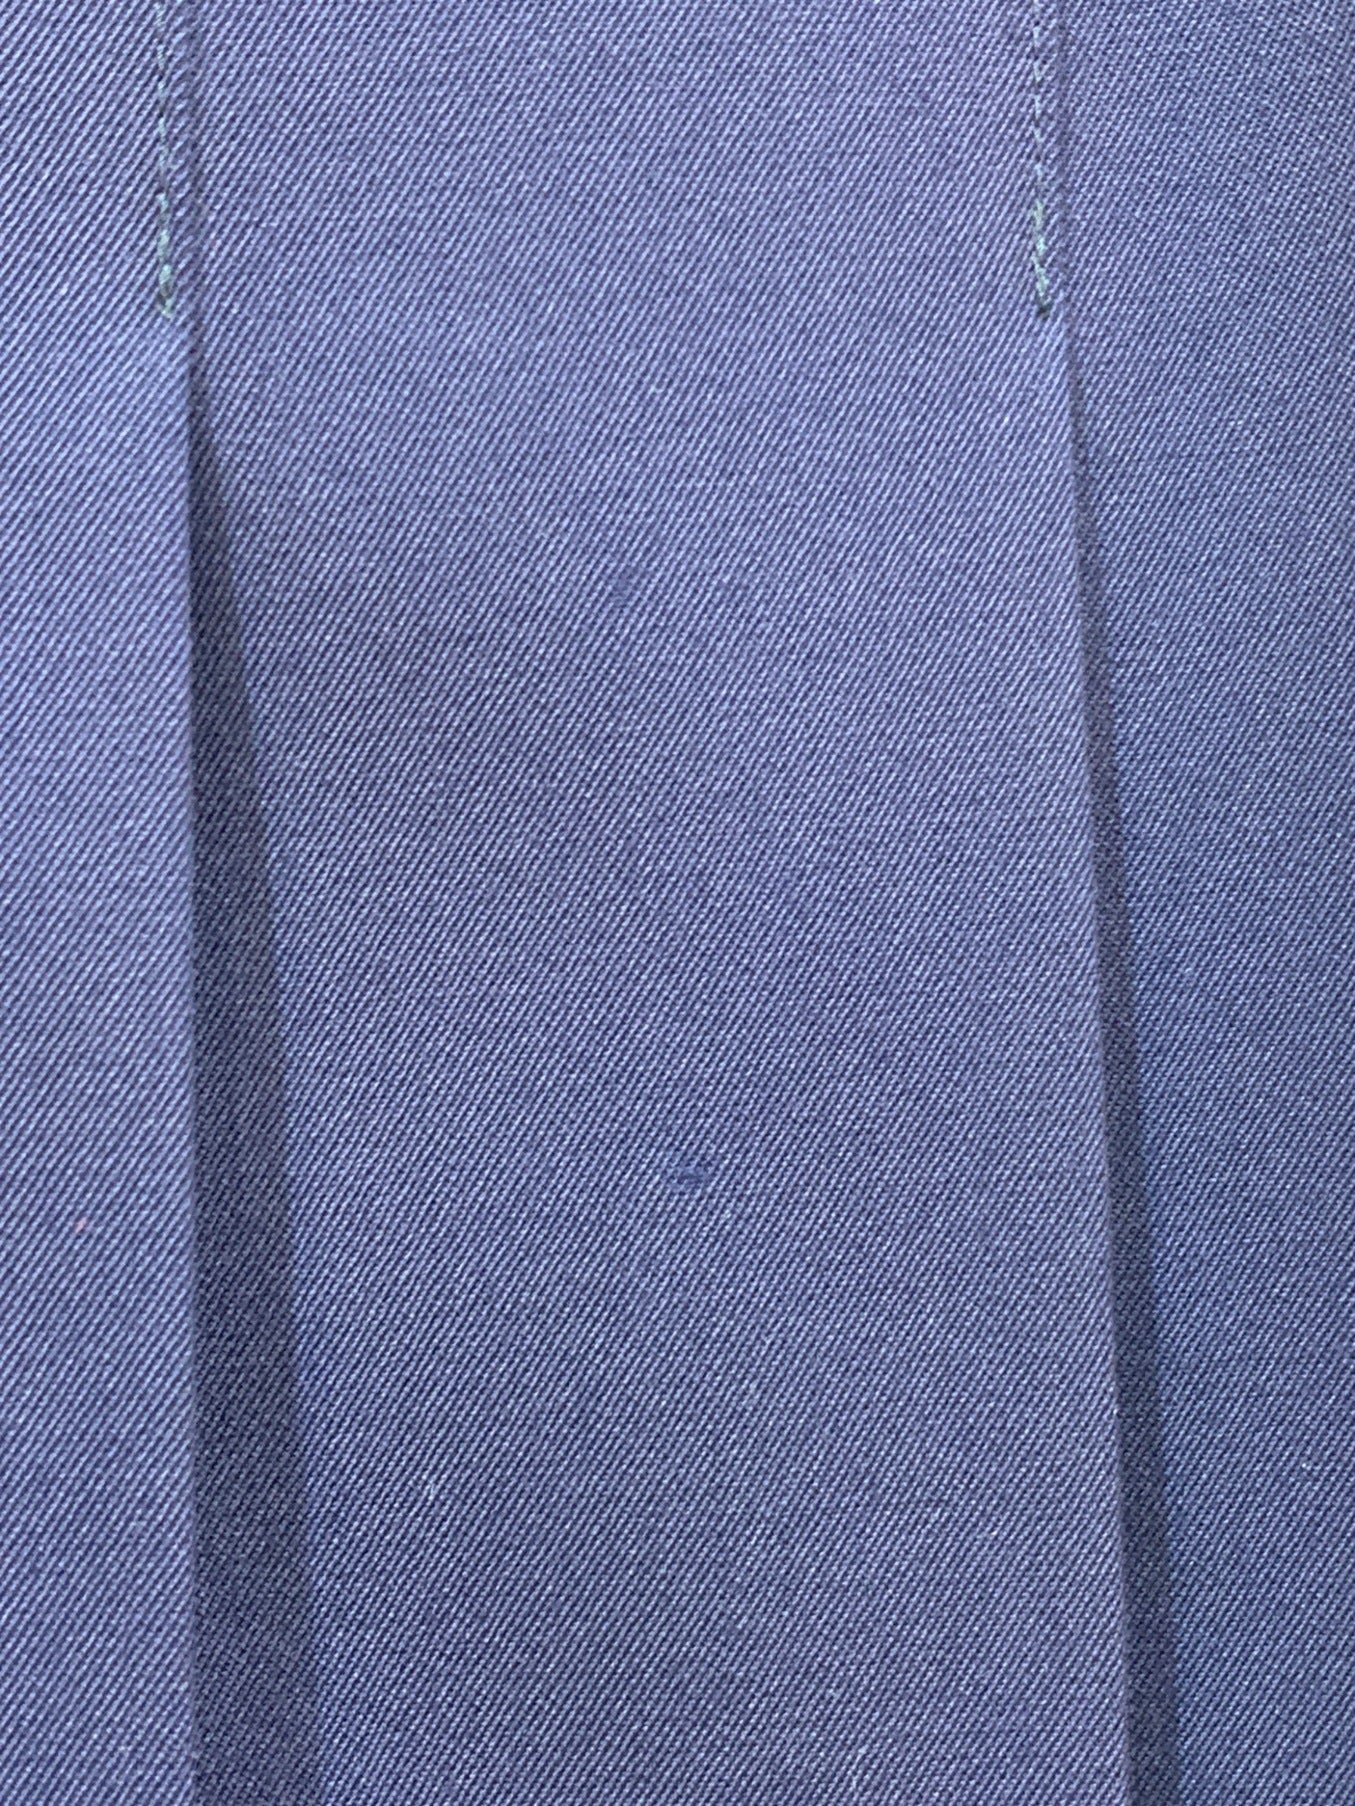 Robe de Chambre Comme des Garcons Wool Gaber กระโปรงจีบยาว RS-10001M